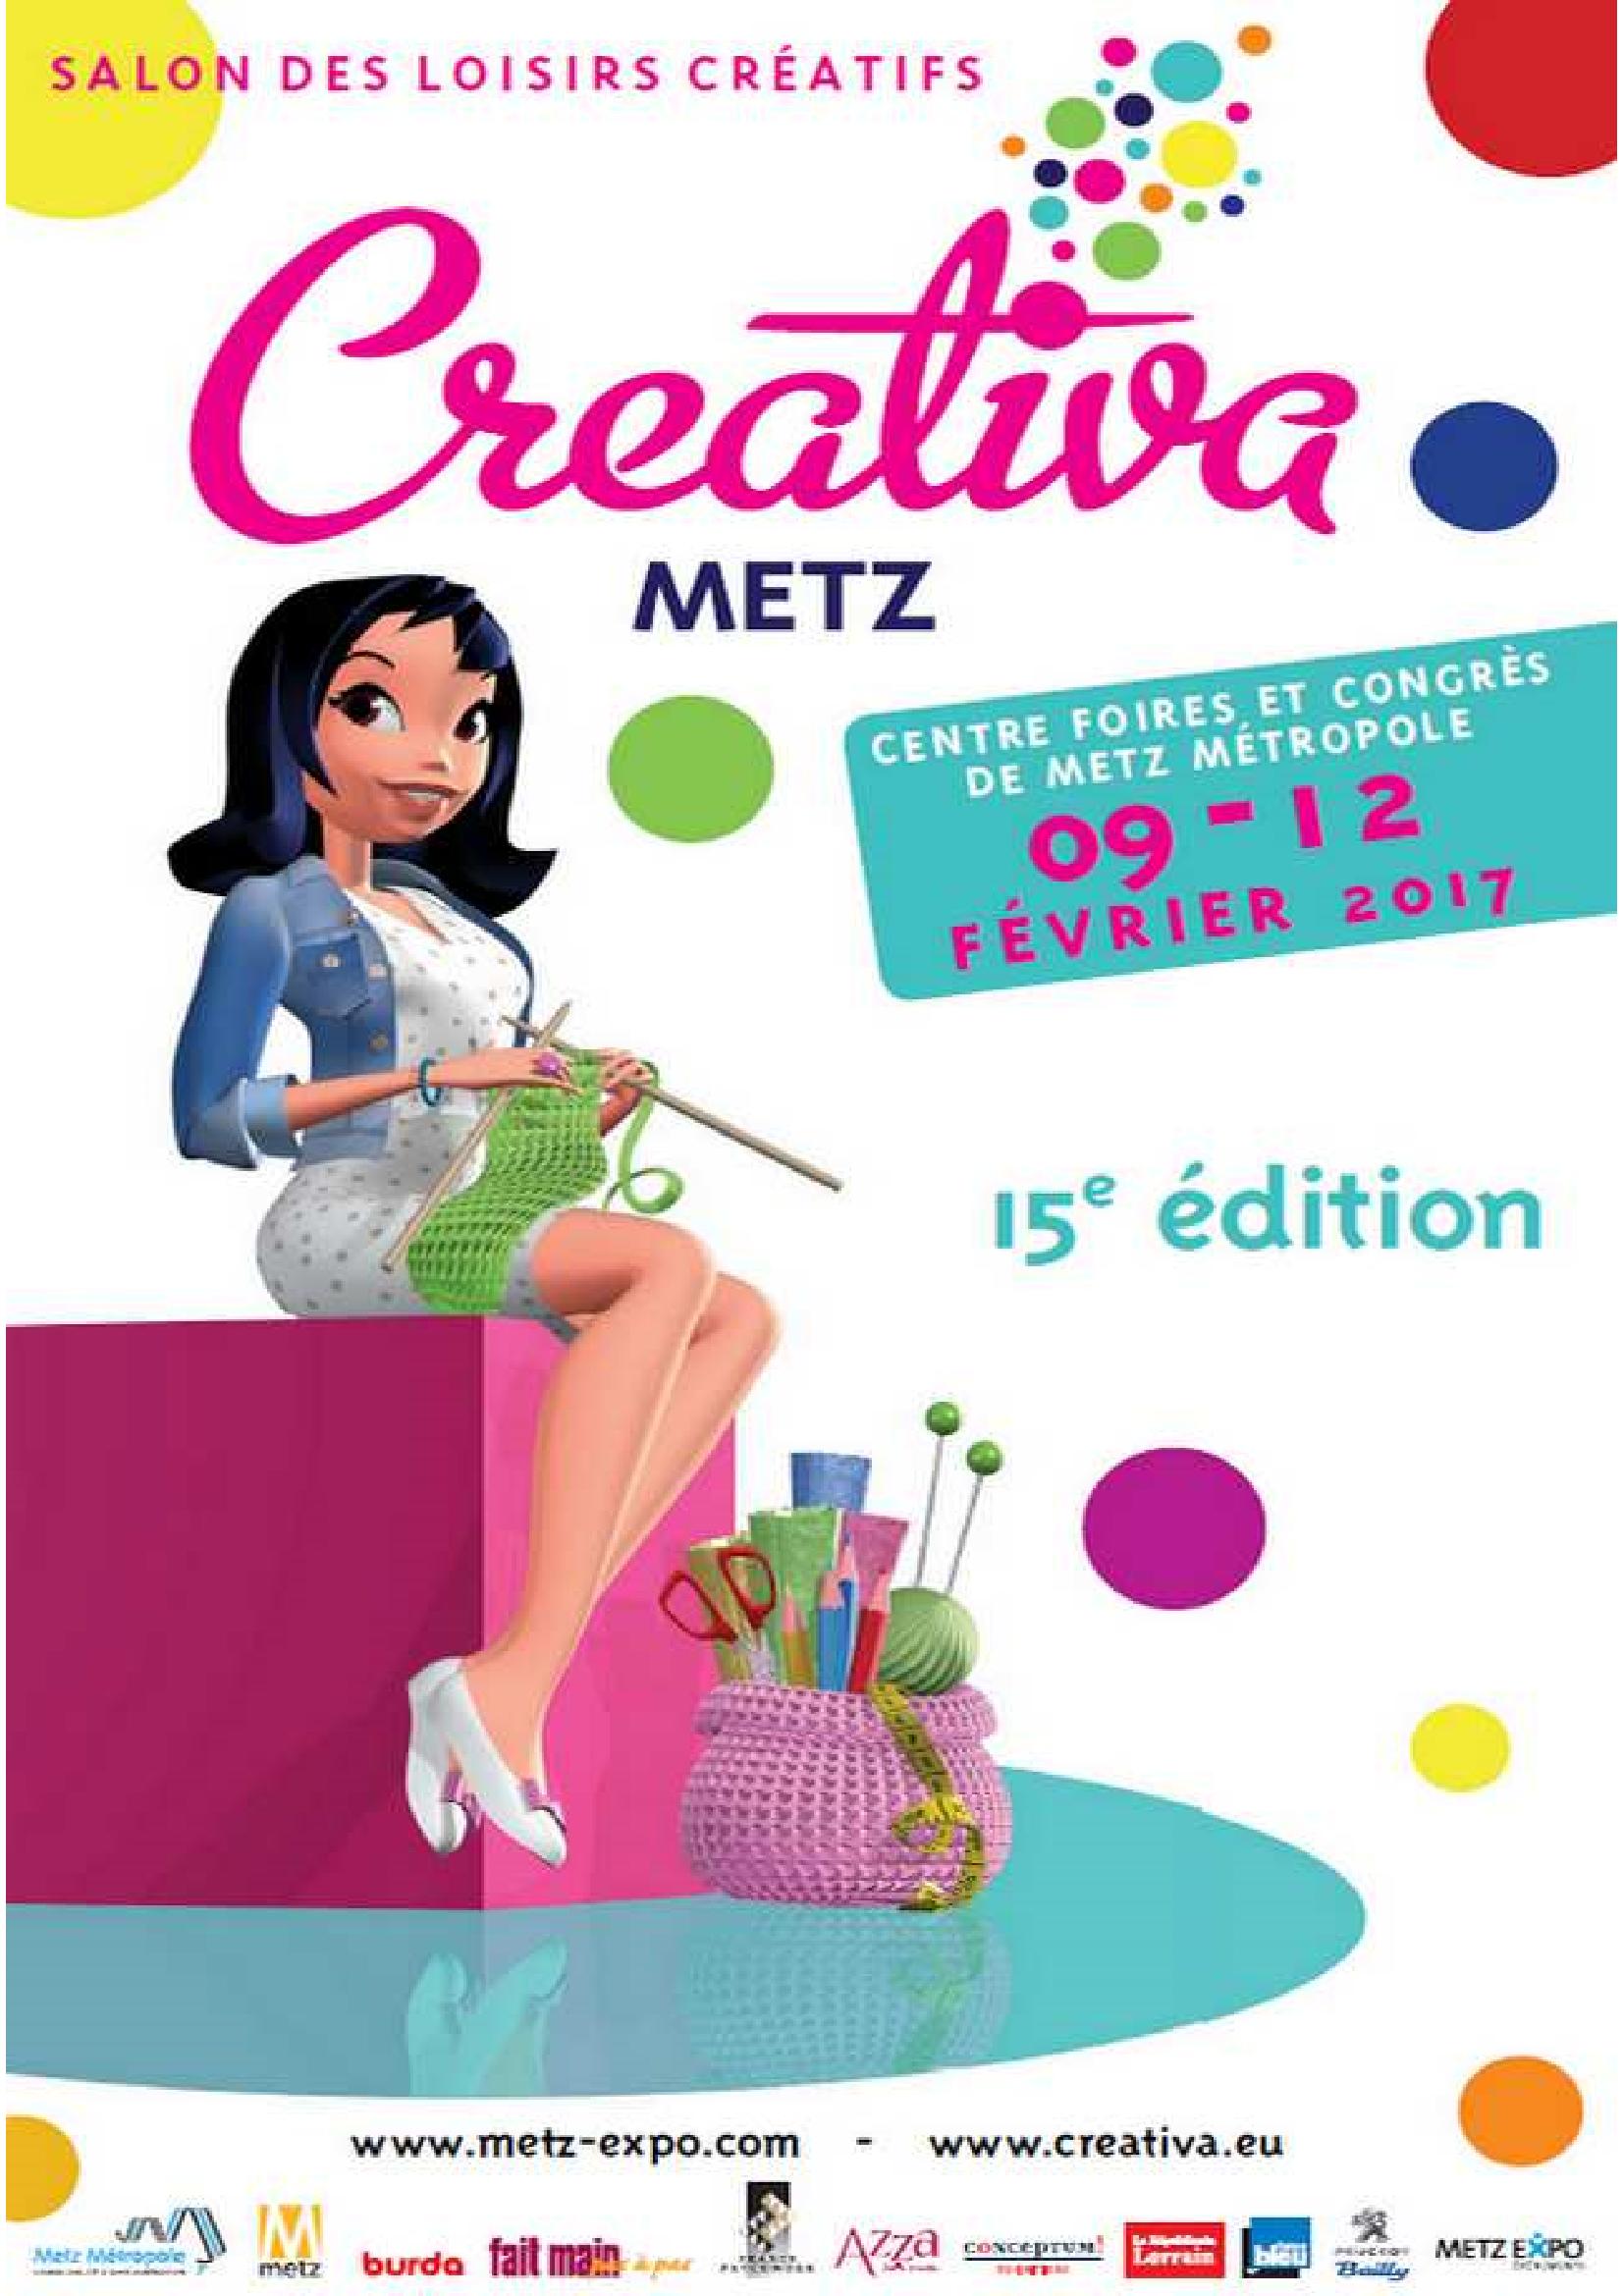 Salon Creativa Metz 2017